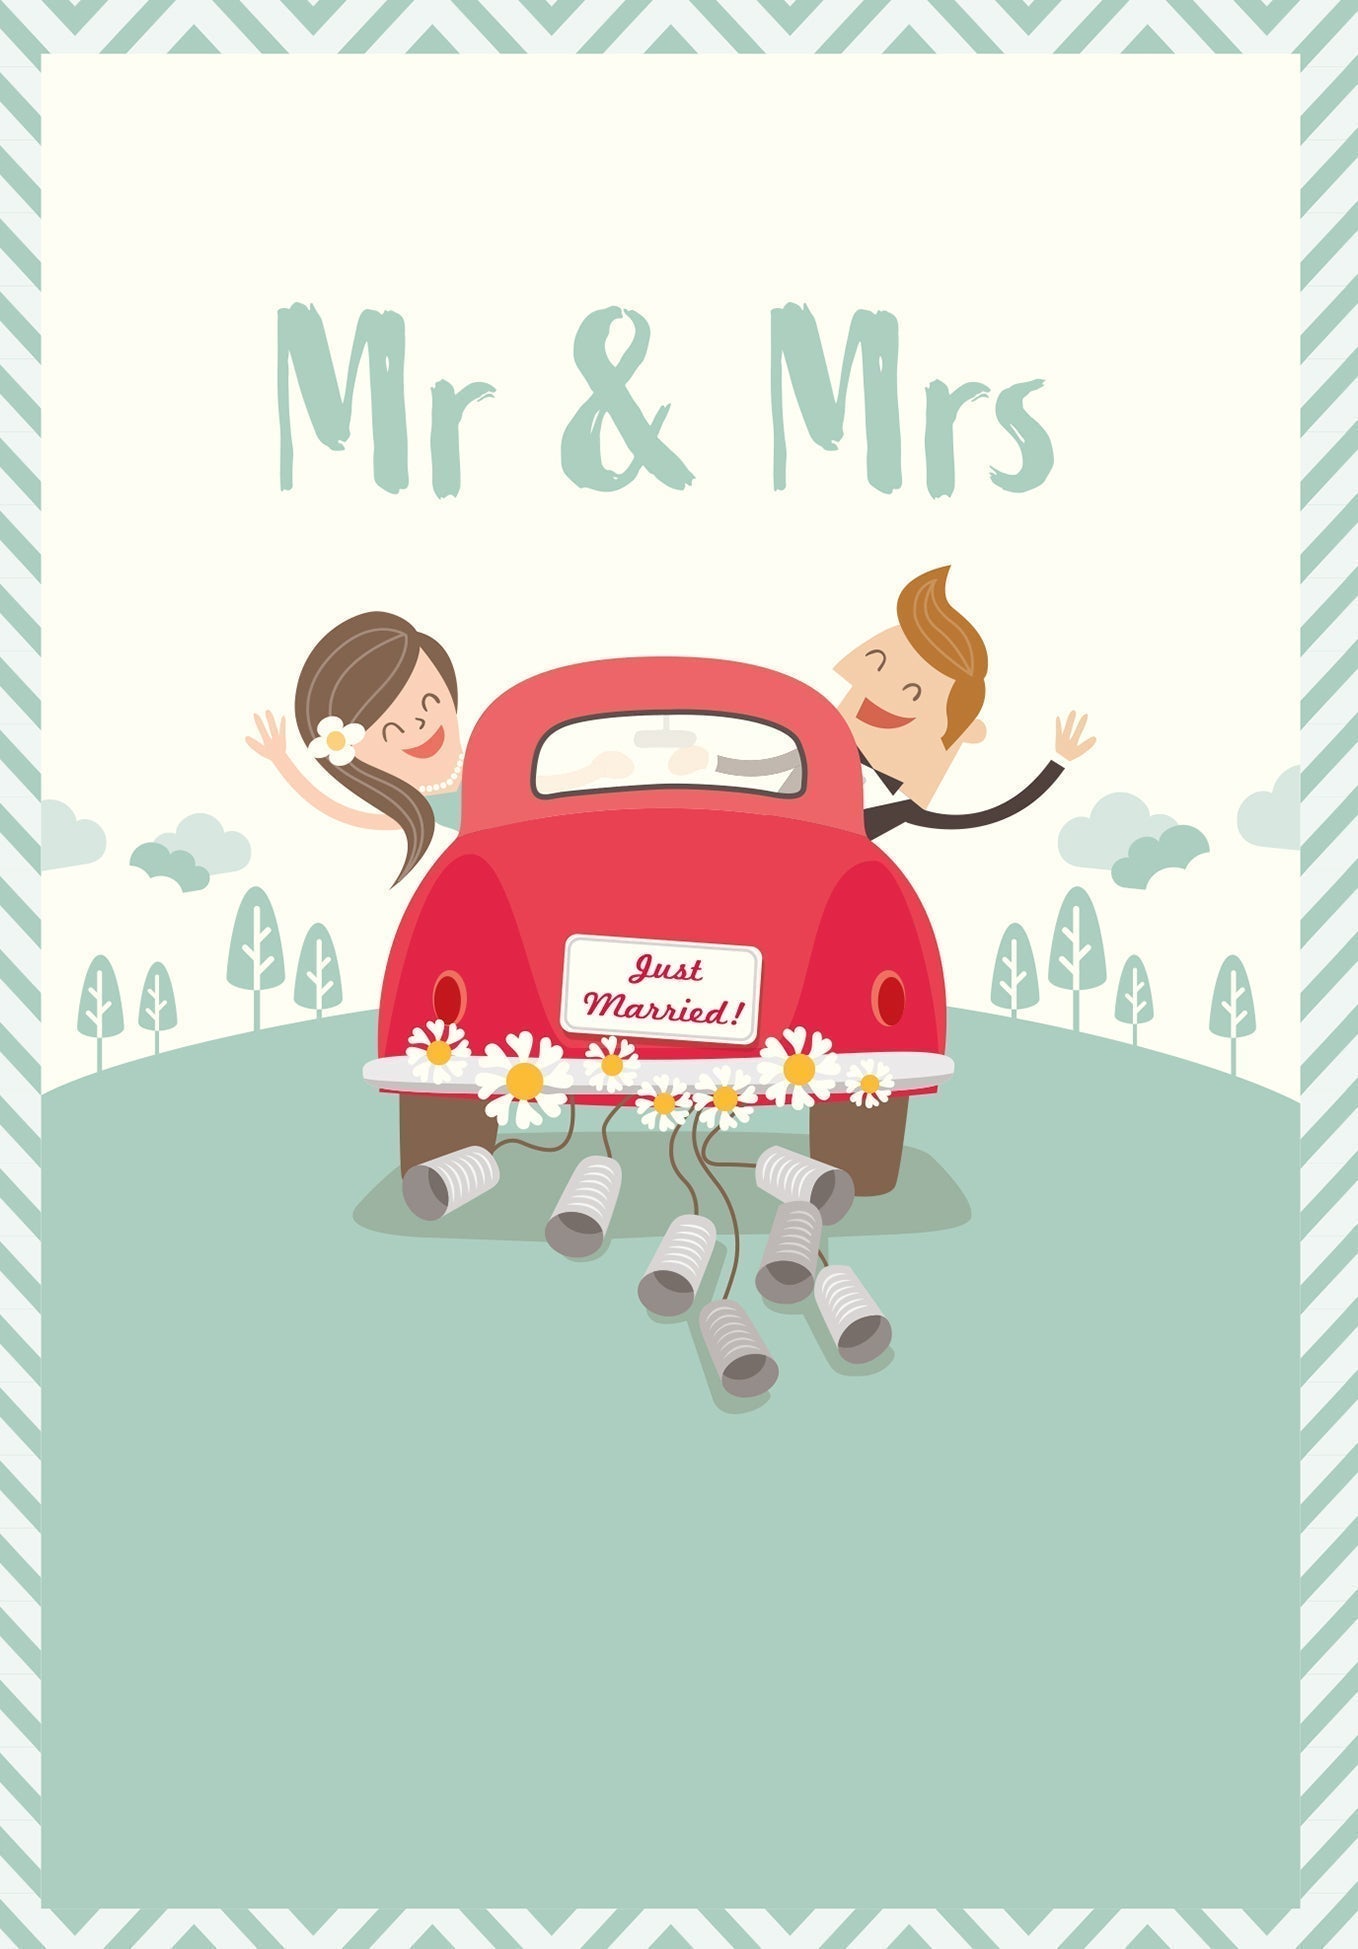 Mr & Mrs - Auto Wunschgutschein